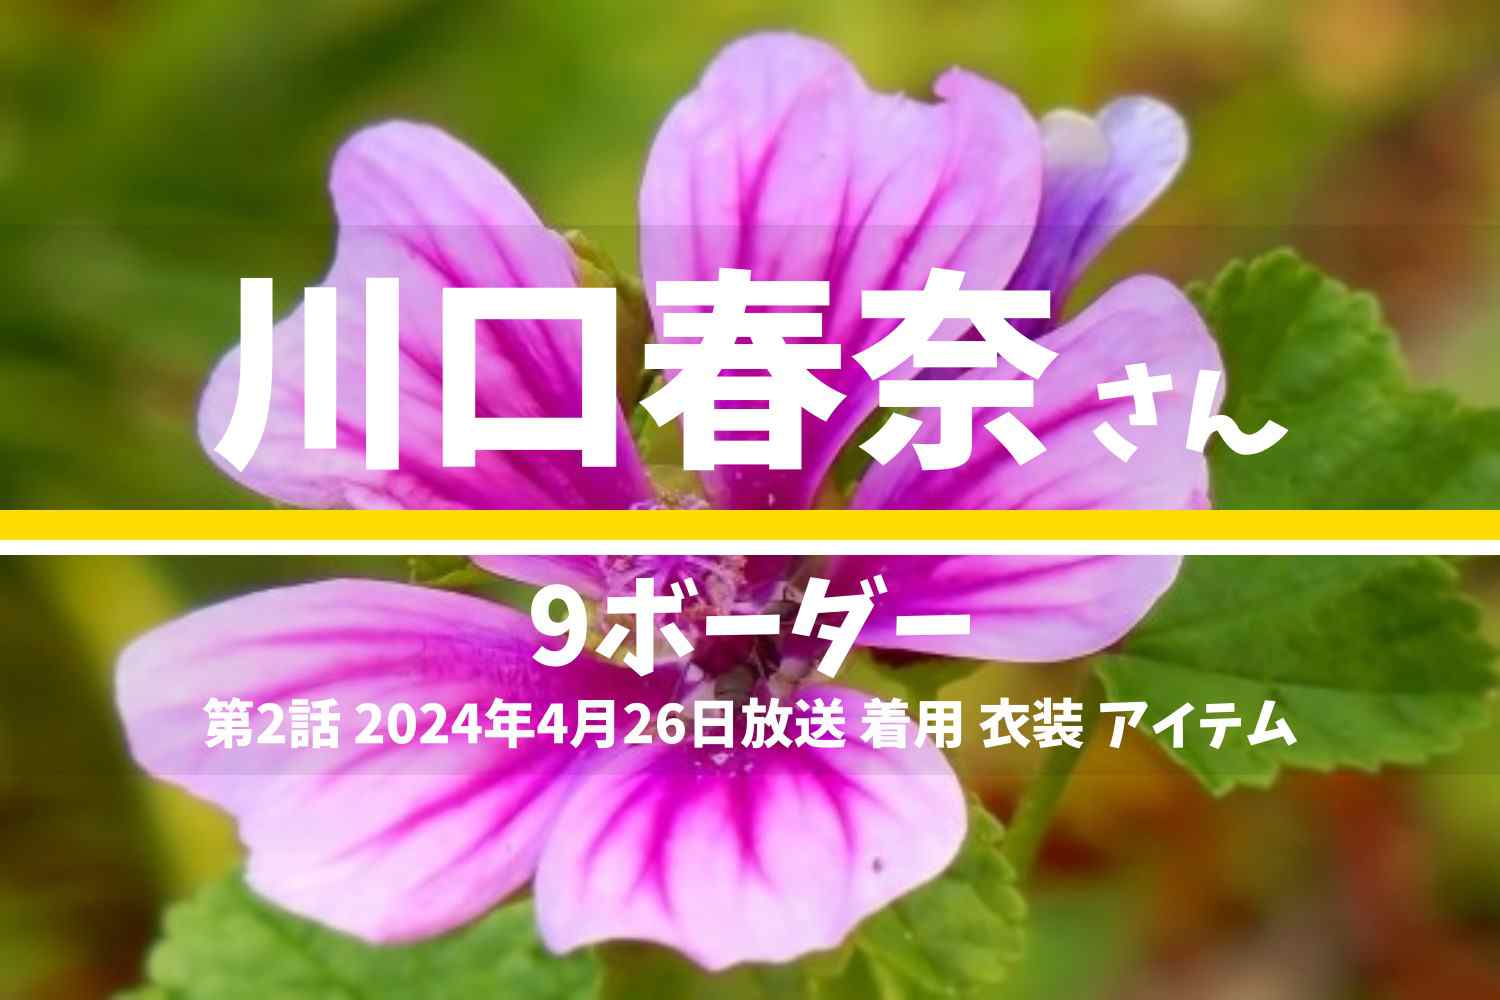 9ボーダー 川口春奈さん テレビドラマ 衣装 2024年4月26日放送